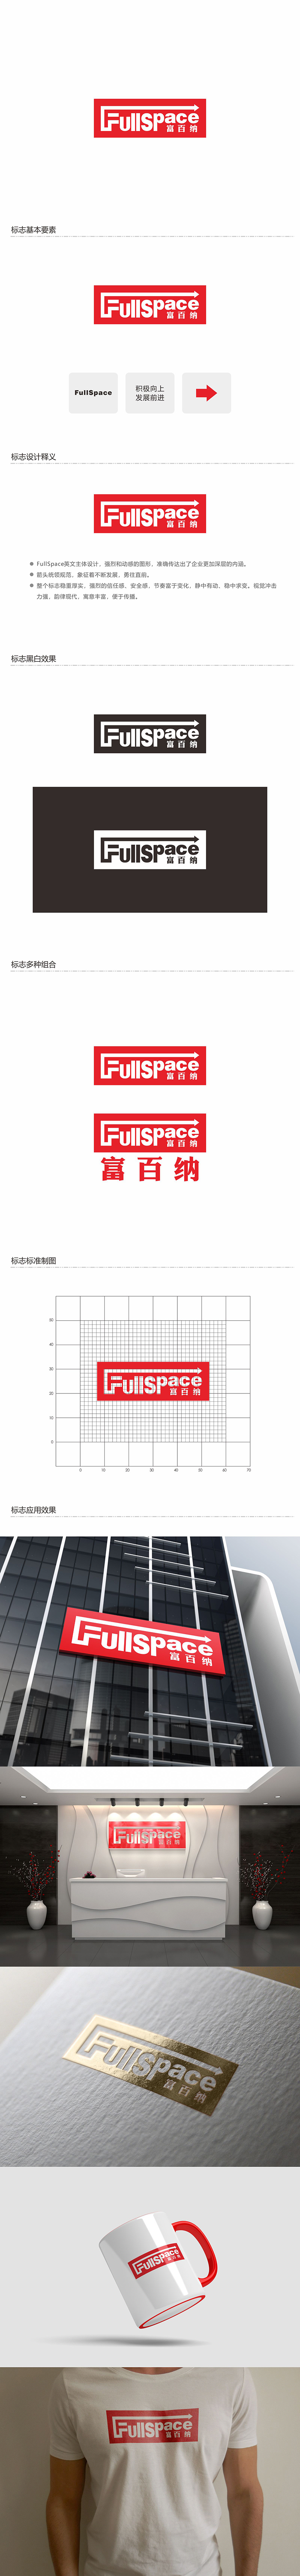 郑锦尚的FullSpace富百纳logo设计